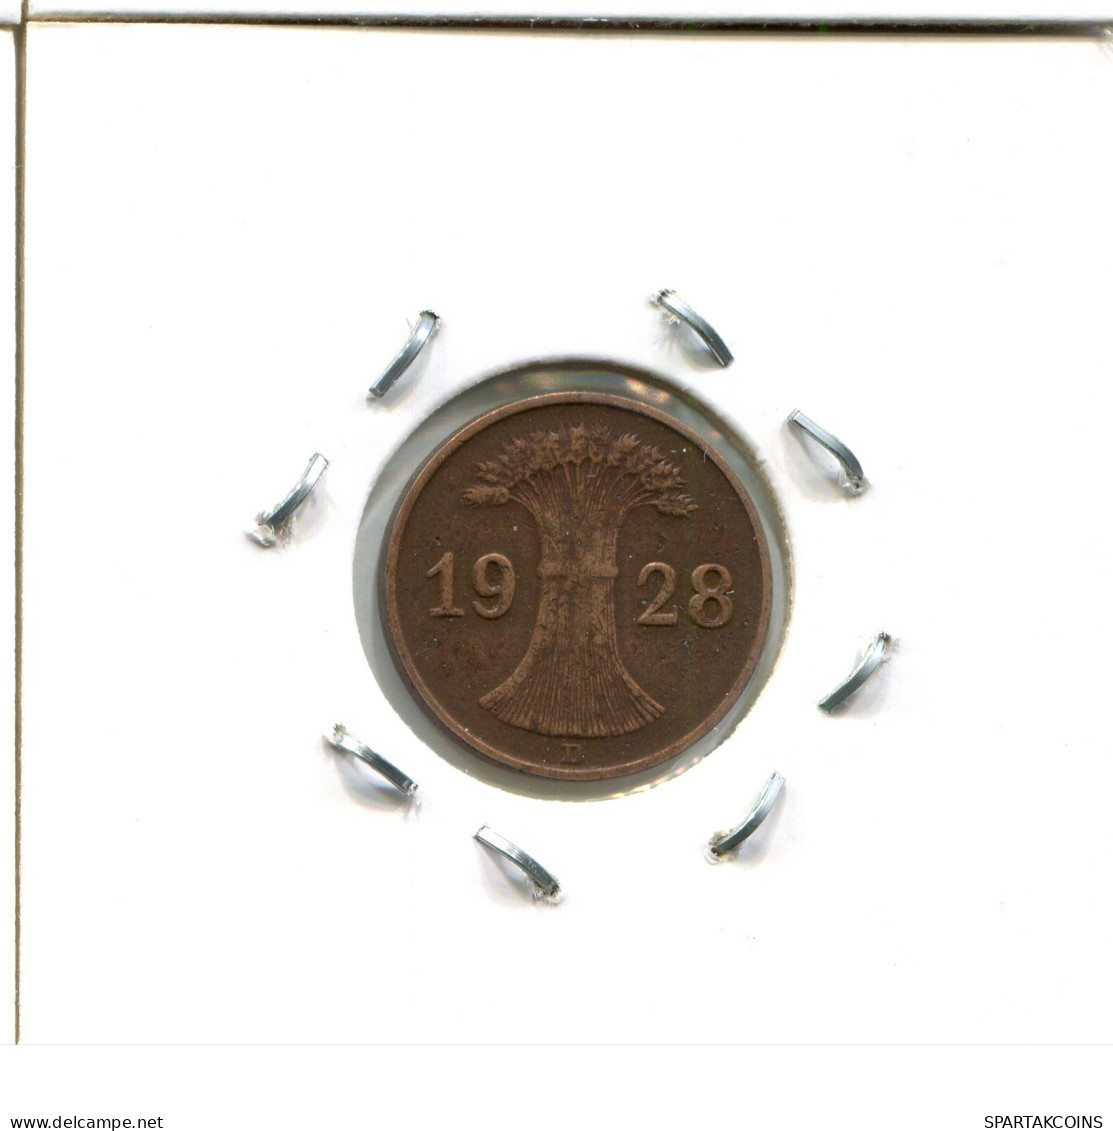 1 RENTENPFENNIG 1928 B DEUTSCHLAND Münze GERMANY #DA451.2.D - 1 Rentenpfennig & 1 Reichspfennig